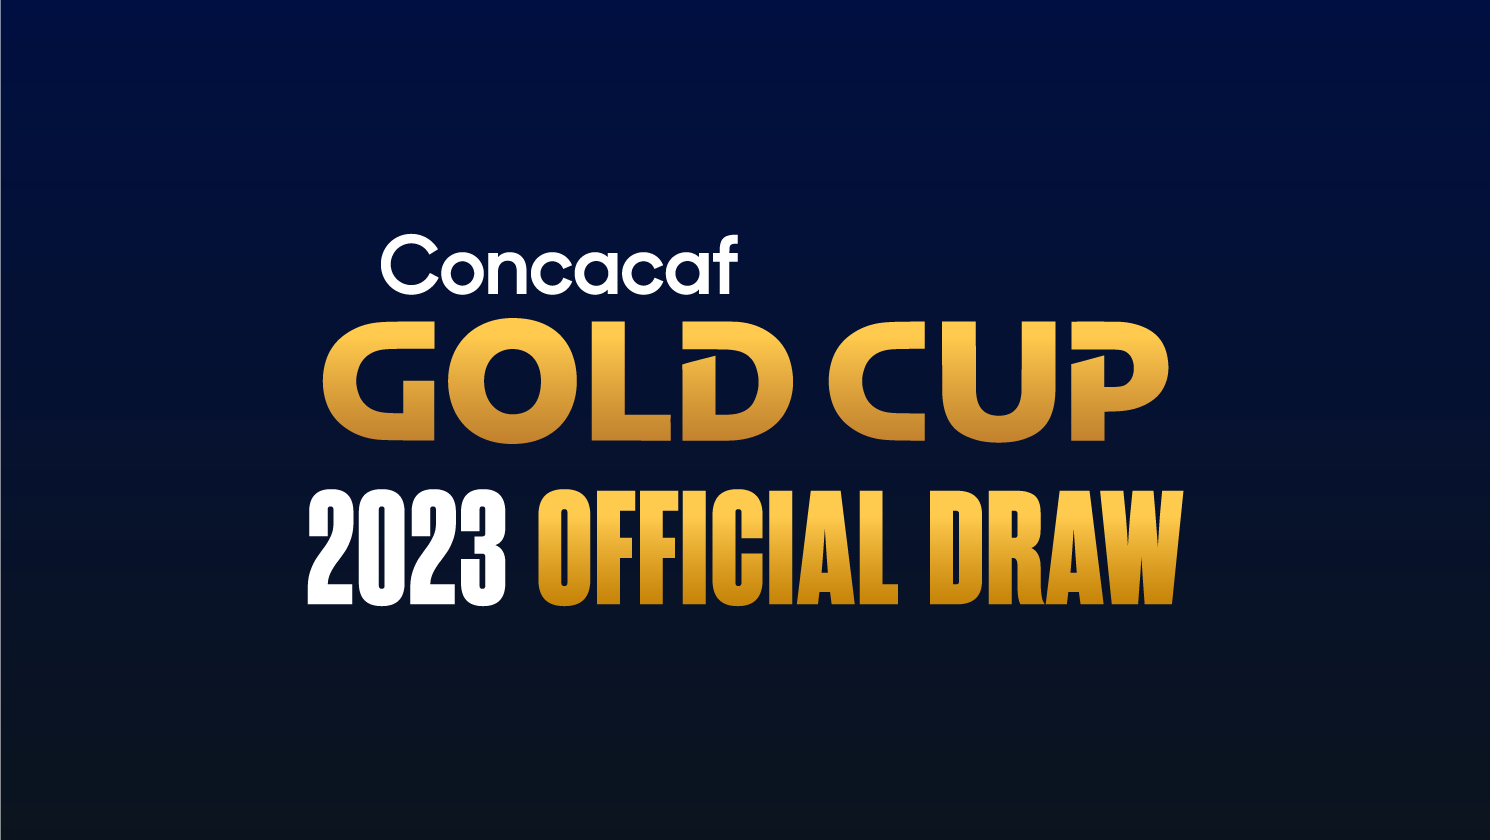 Gold Cup Group D result, recap: Guatemala 1, Cuba 0